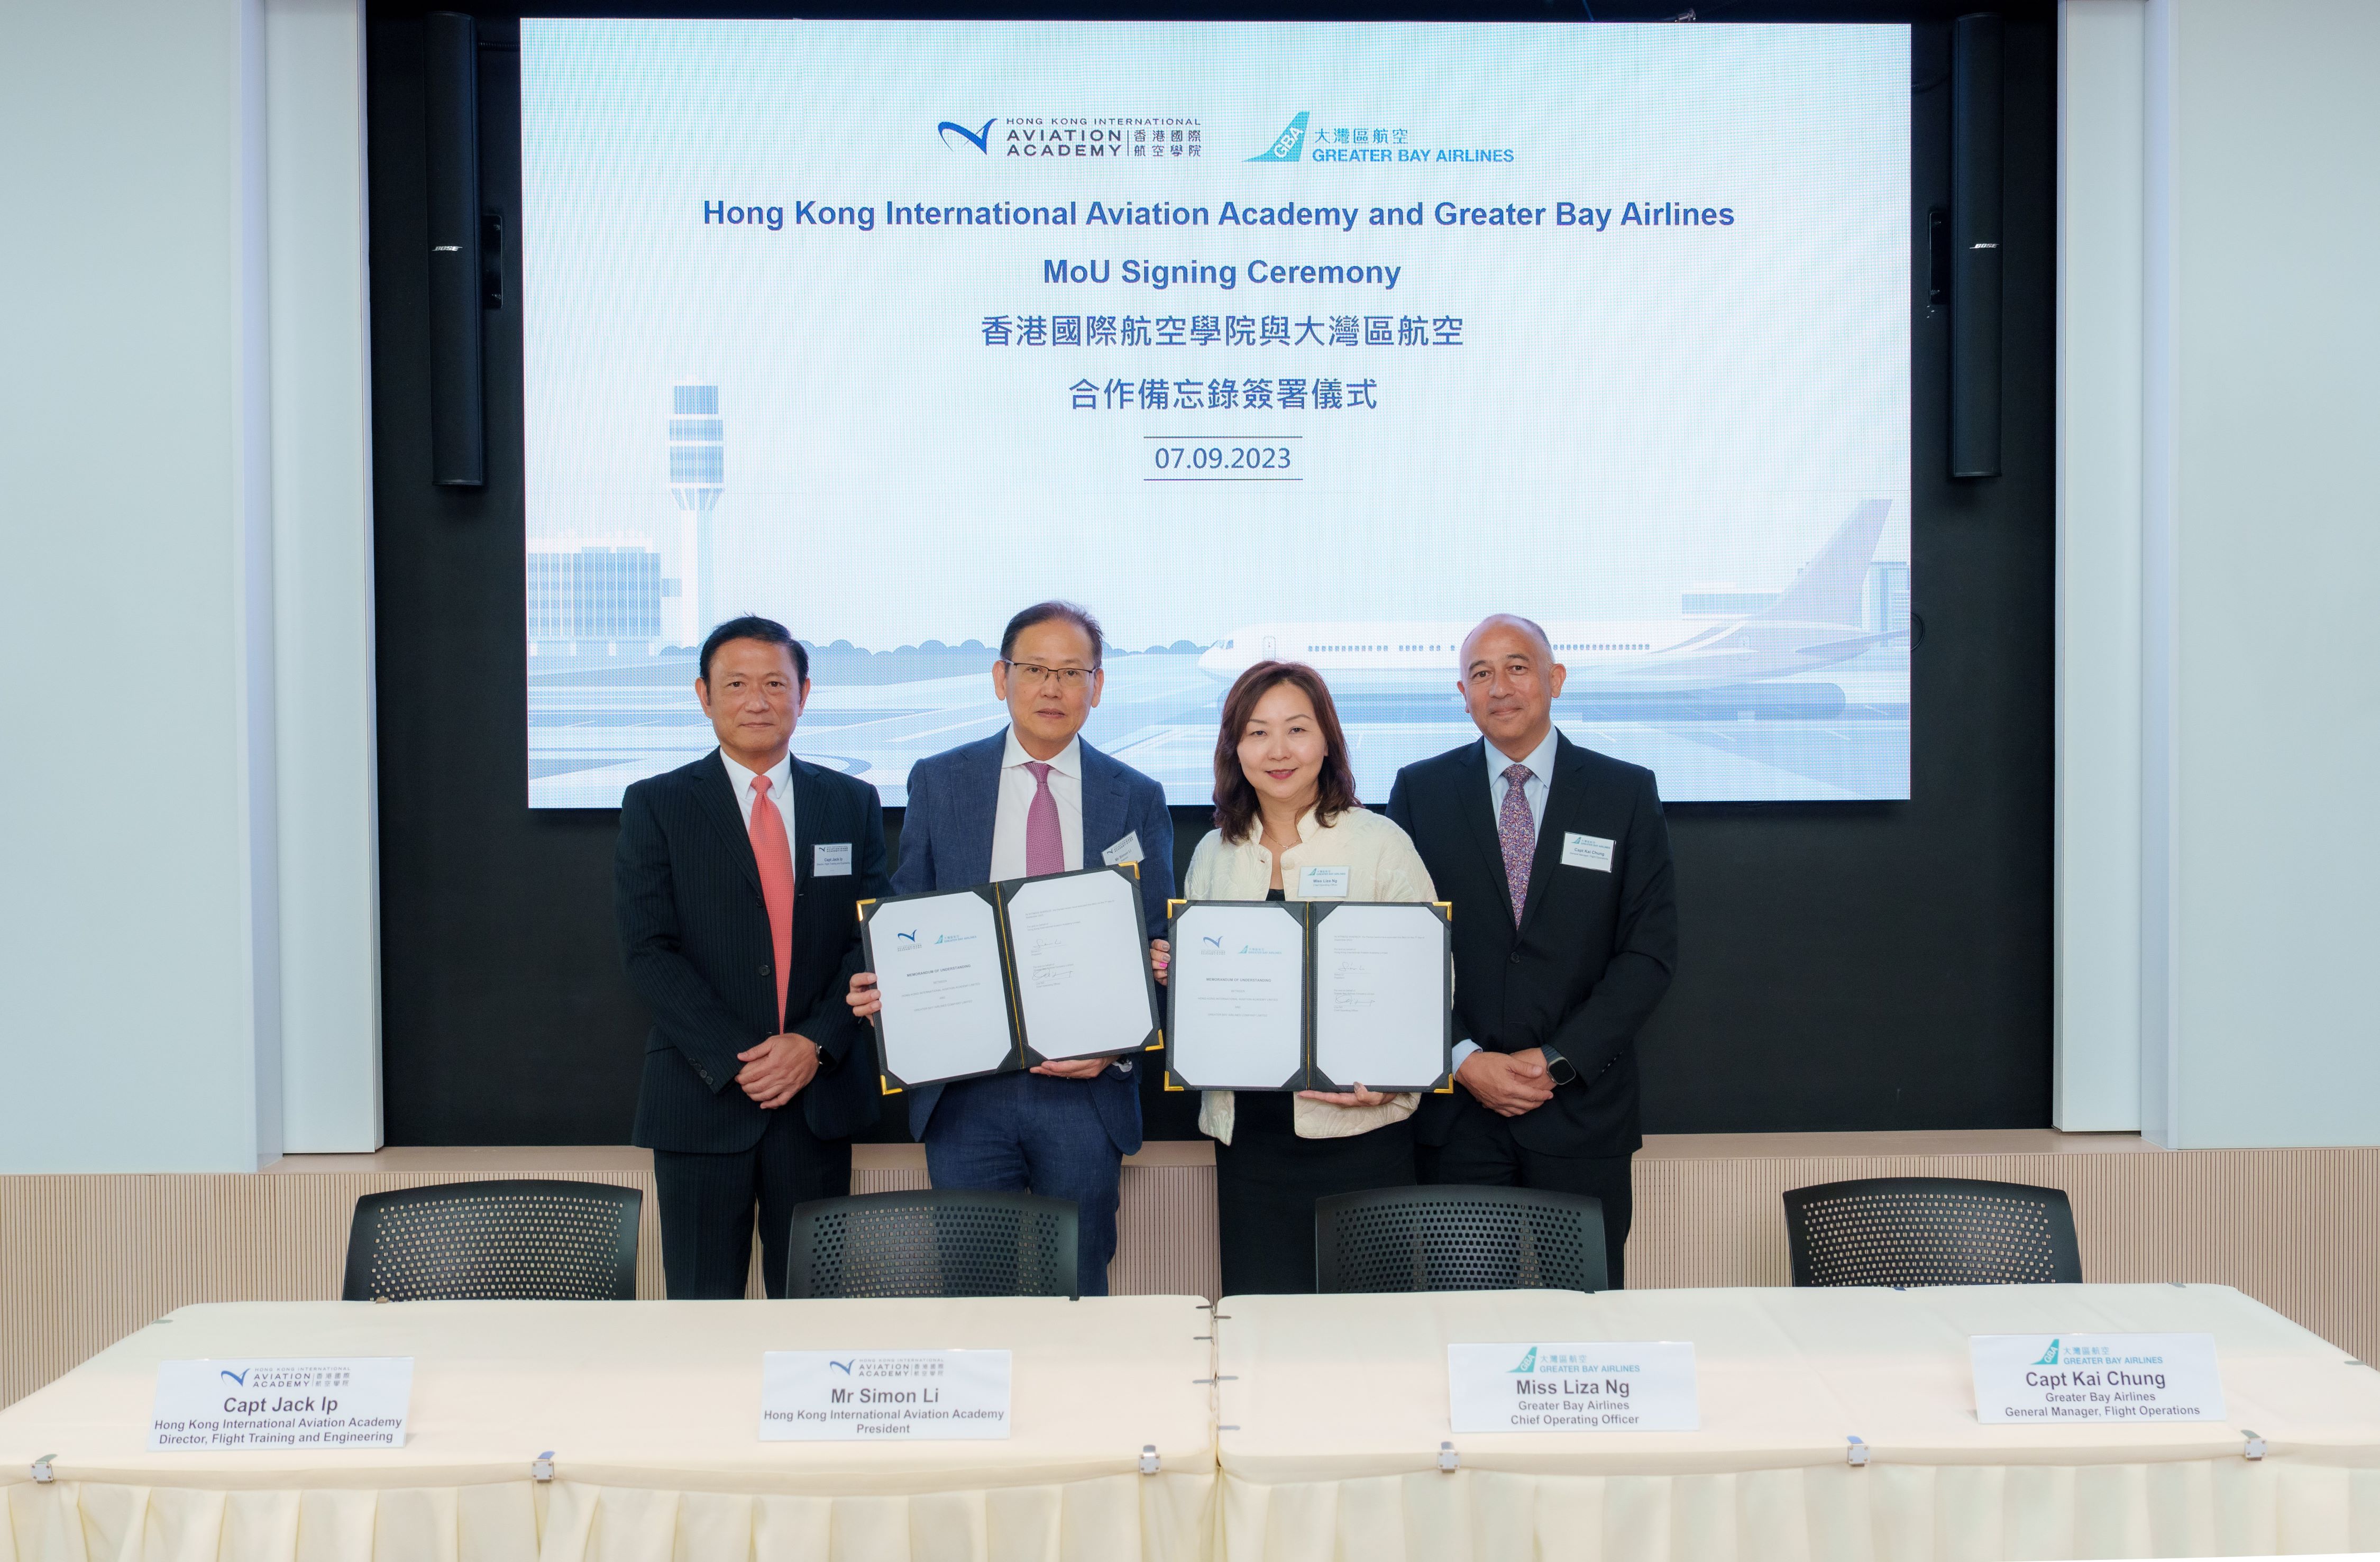 大灣區航空與香港國際航空學院簽署合作備忘錄 攜手培育新一代本地機師以配合市場需求